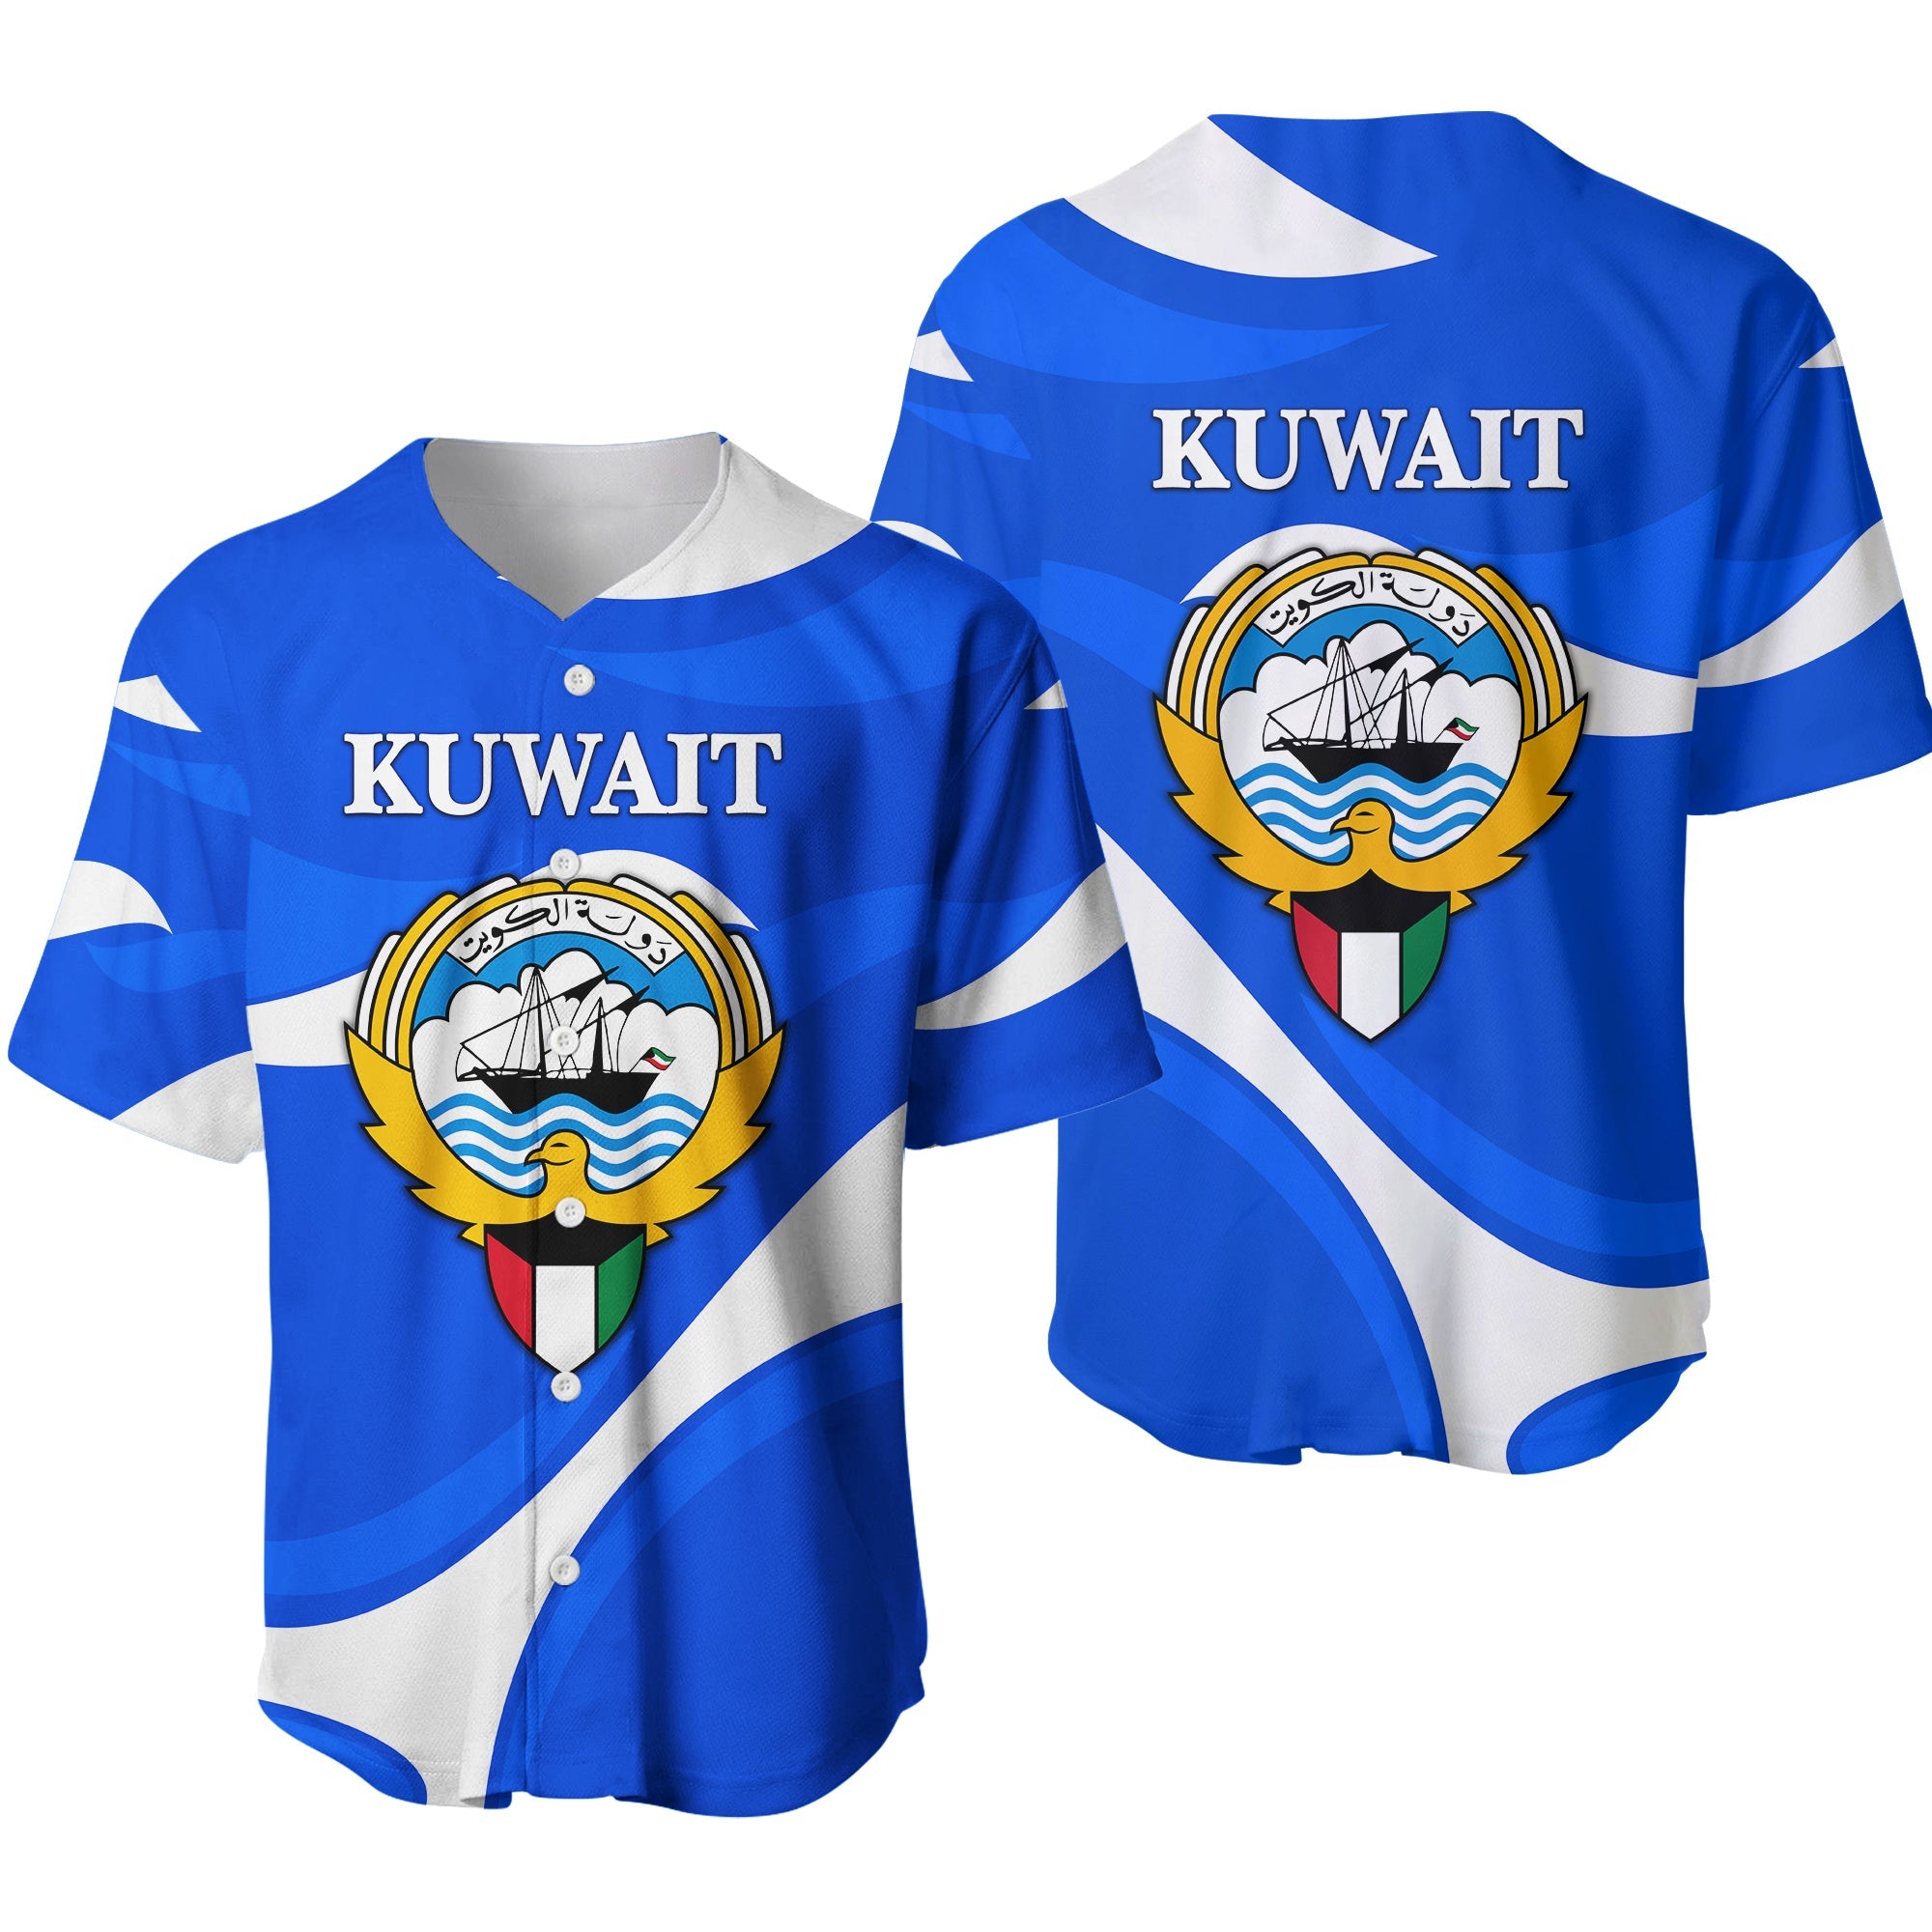 kuwait-baseball-jersey-sporty-style-blue